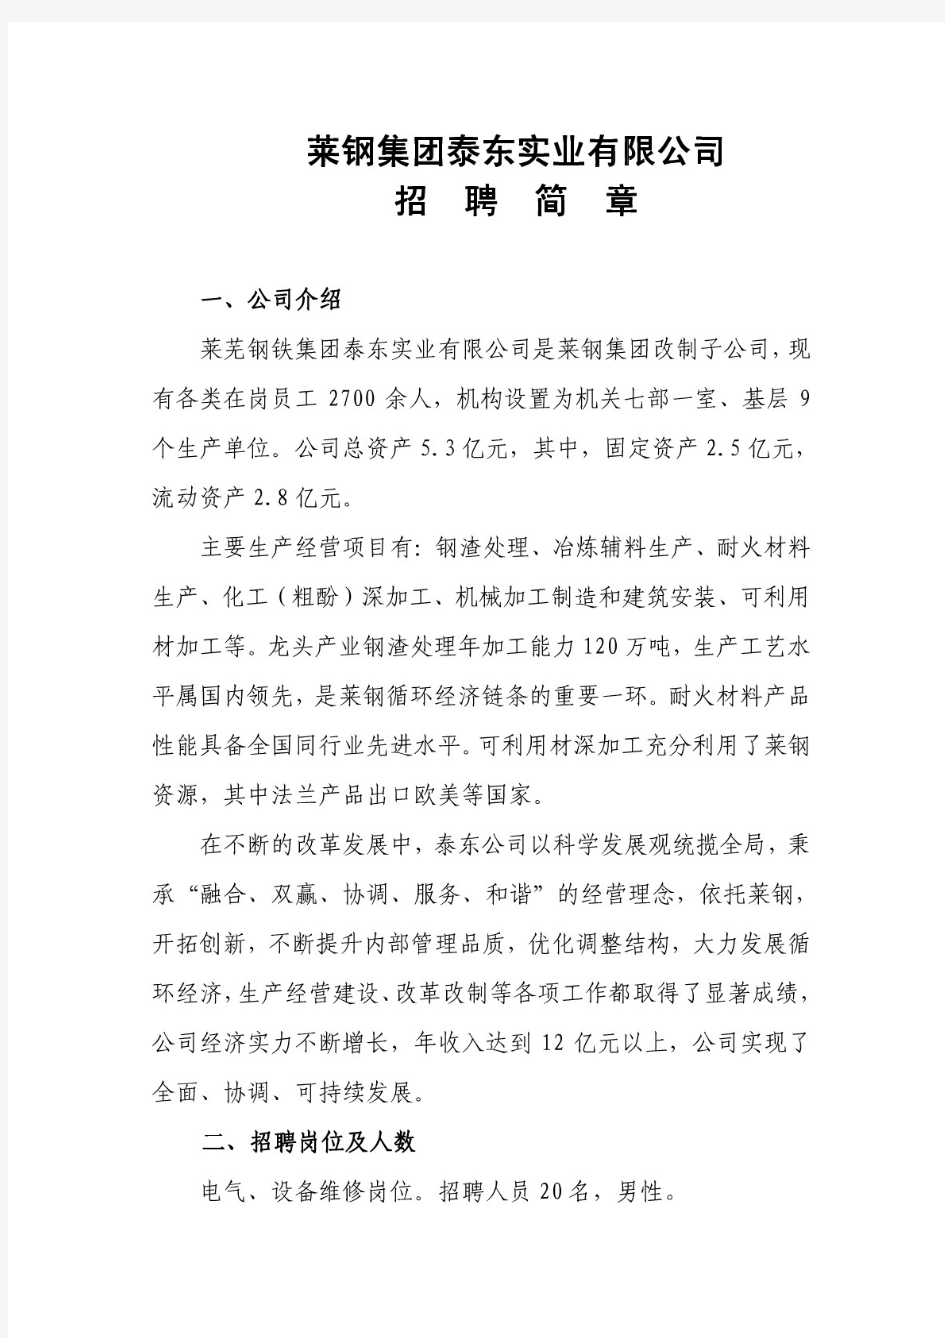 莱钢集团泰东实业有限公司招聘简章